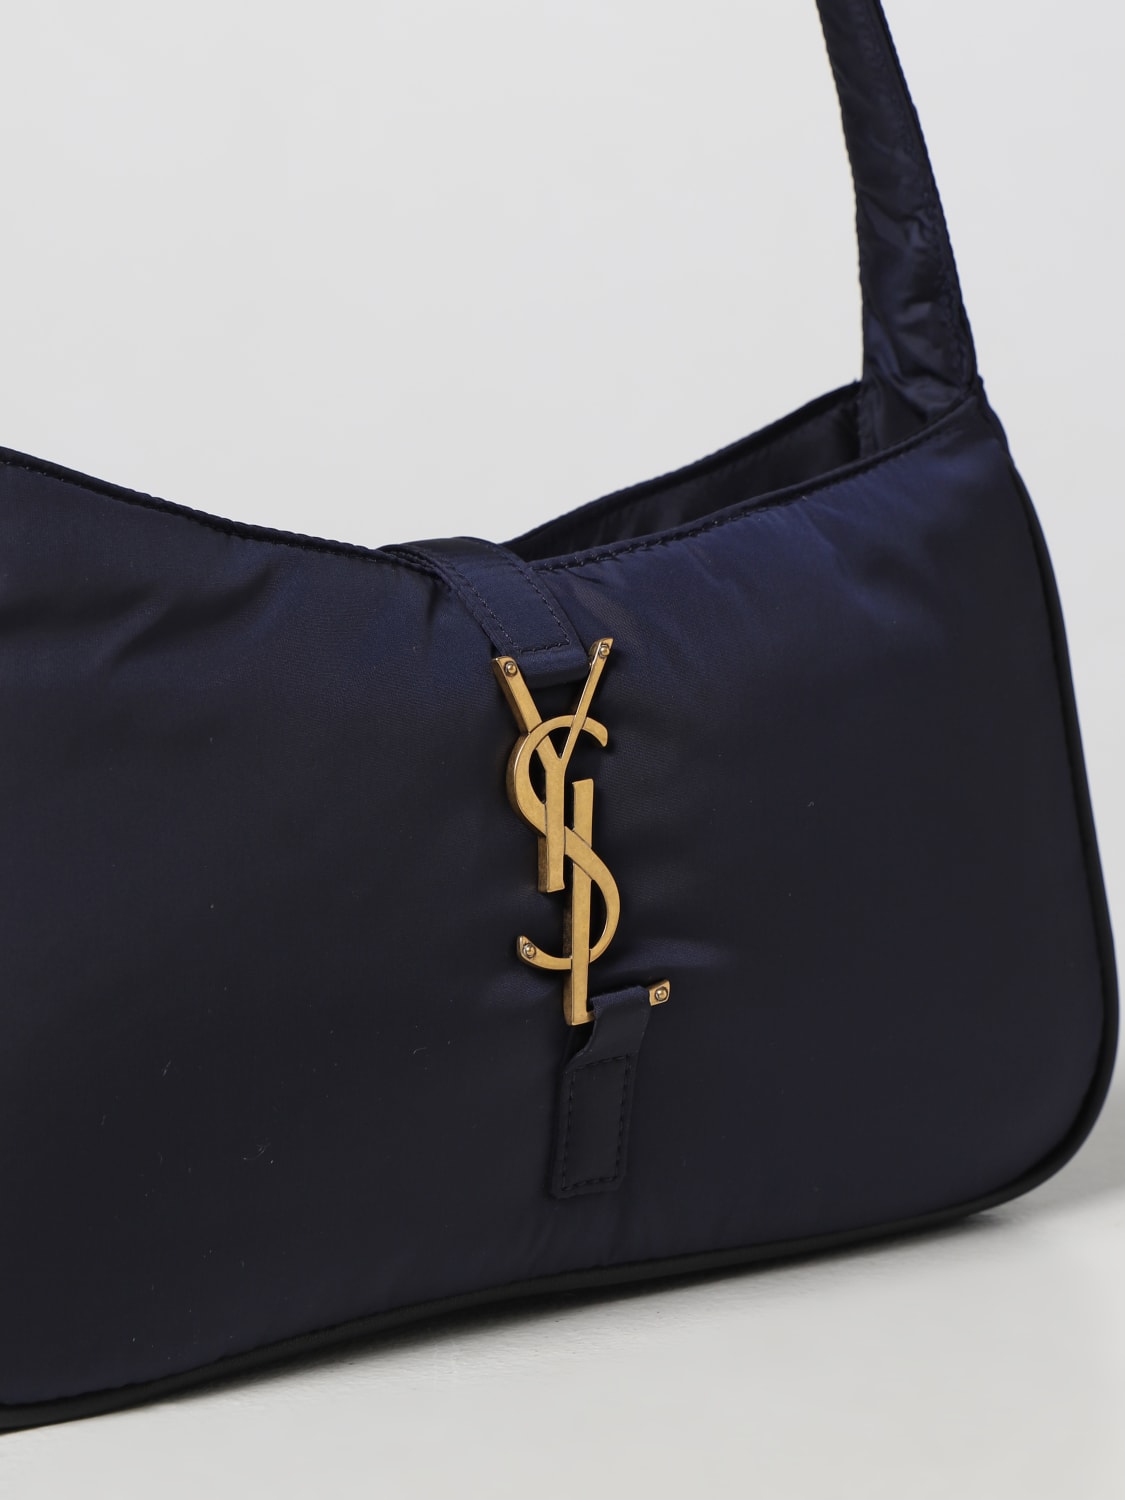 Yves Saint Laurent Bag Saint Laurent Bag Yves Saint Laurent 